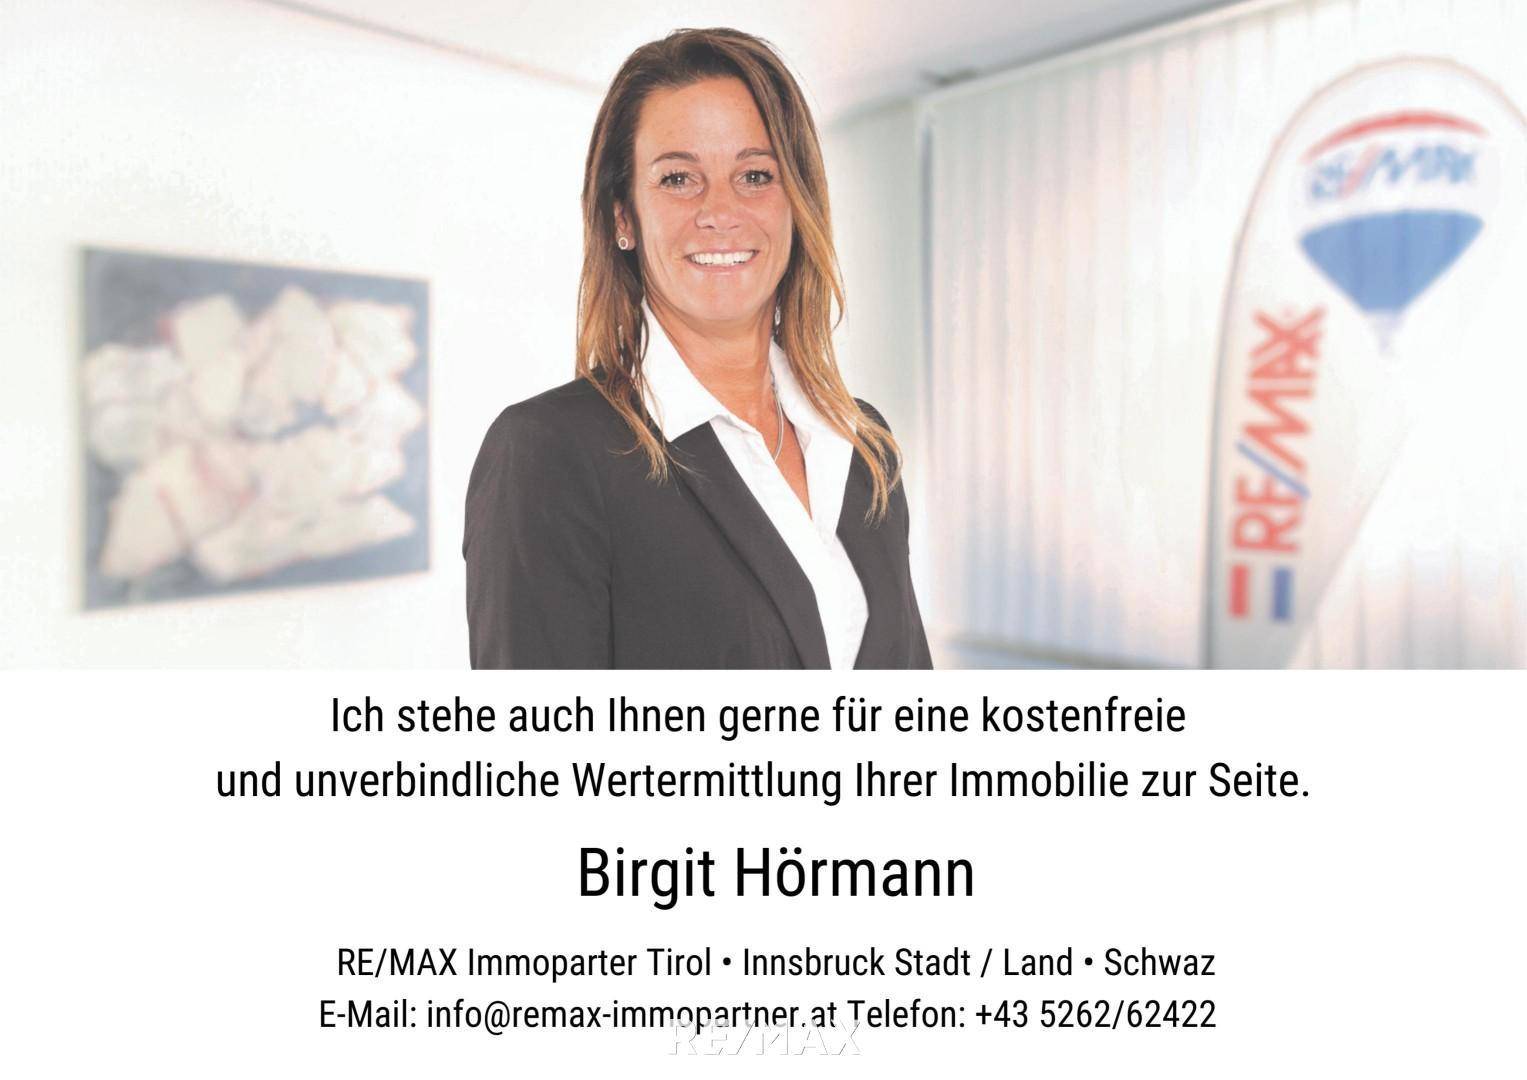 Birgit Hörmann #remaximmopartner